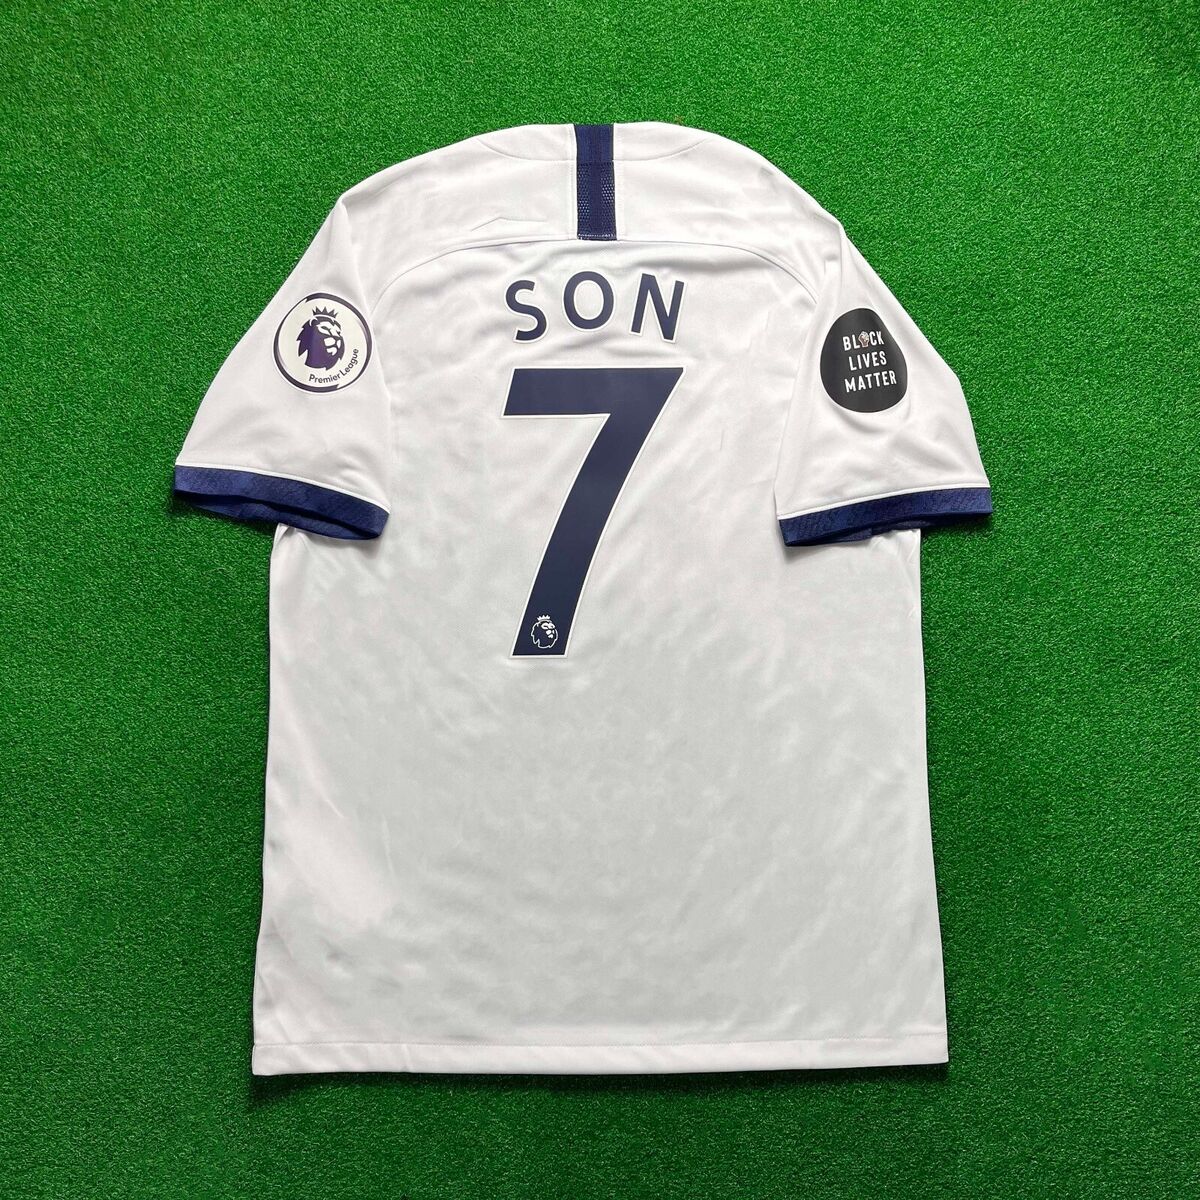 Heung-Min Son 19 20 Tottenham Hotspur FC Home Soccer Jersey